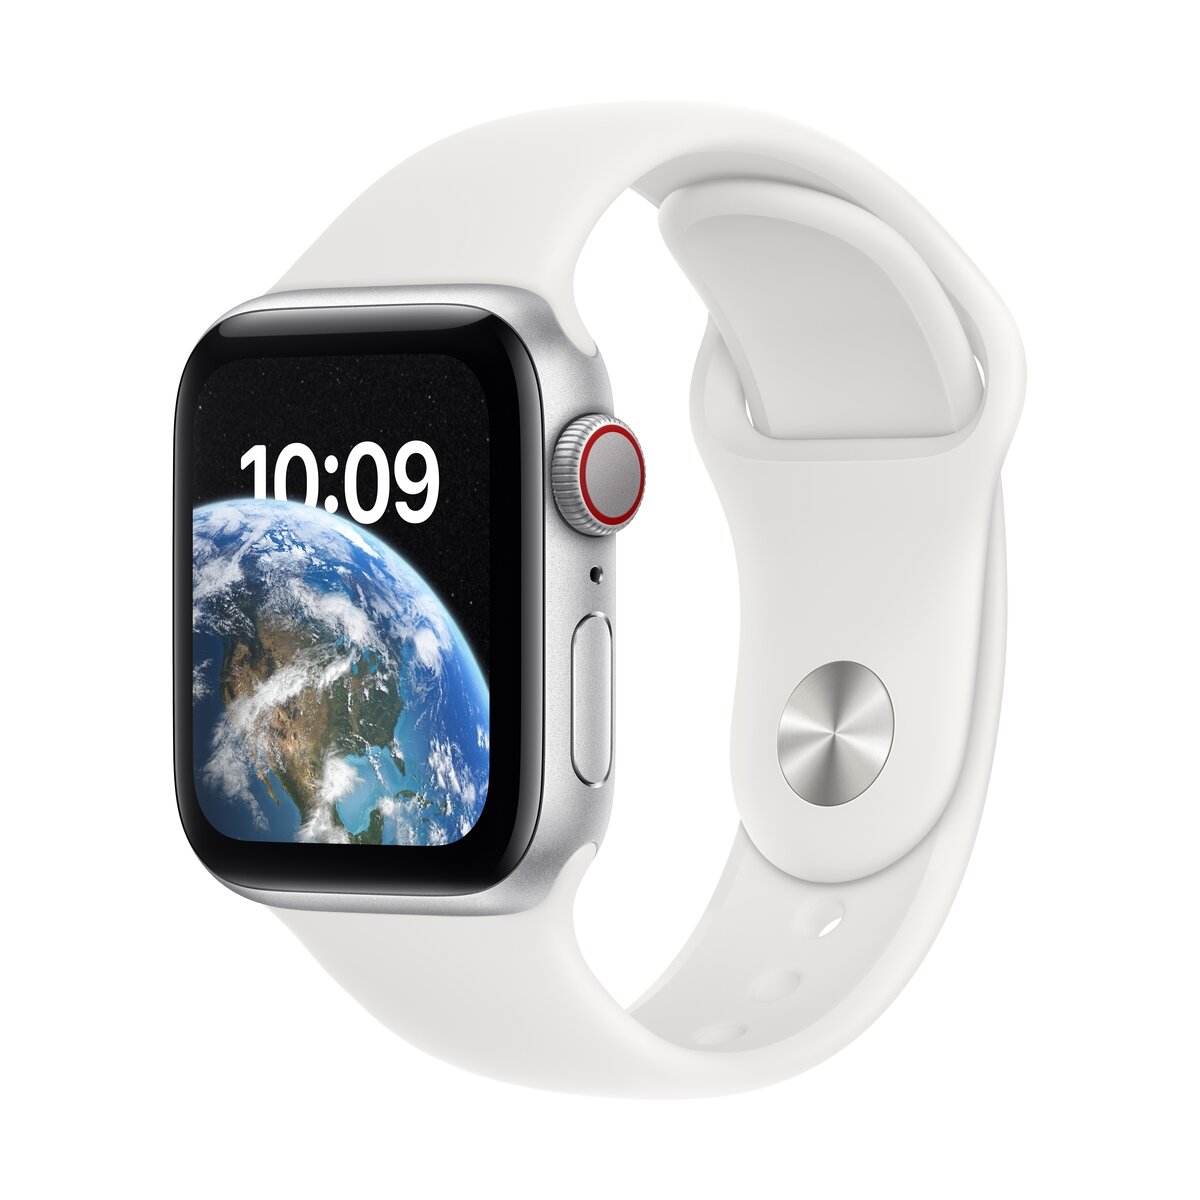 Apple Watch SE 第2世代 GPS+Cellularモデル 40mm